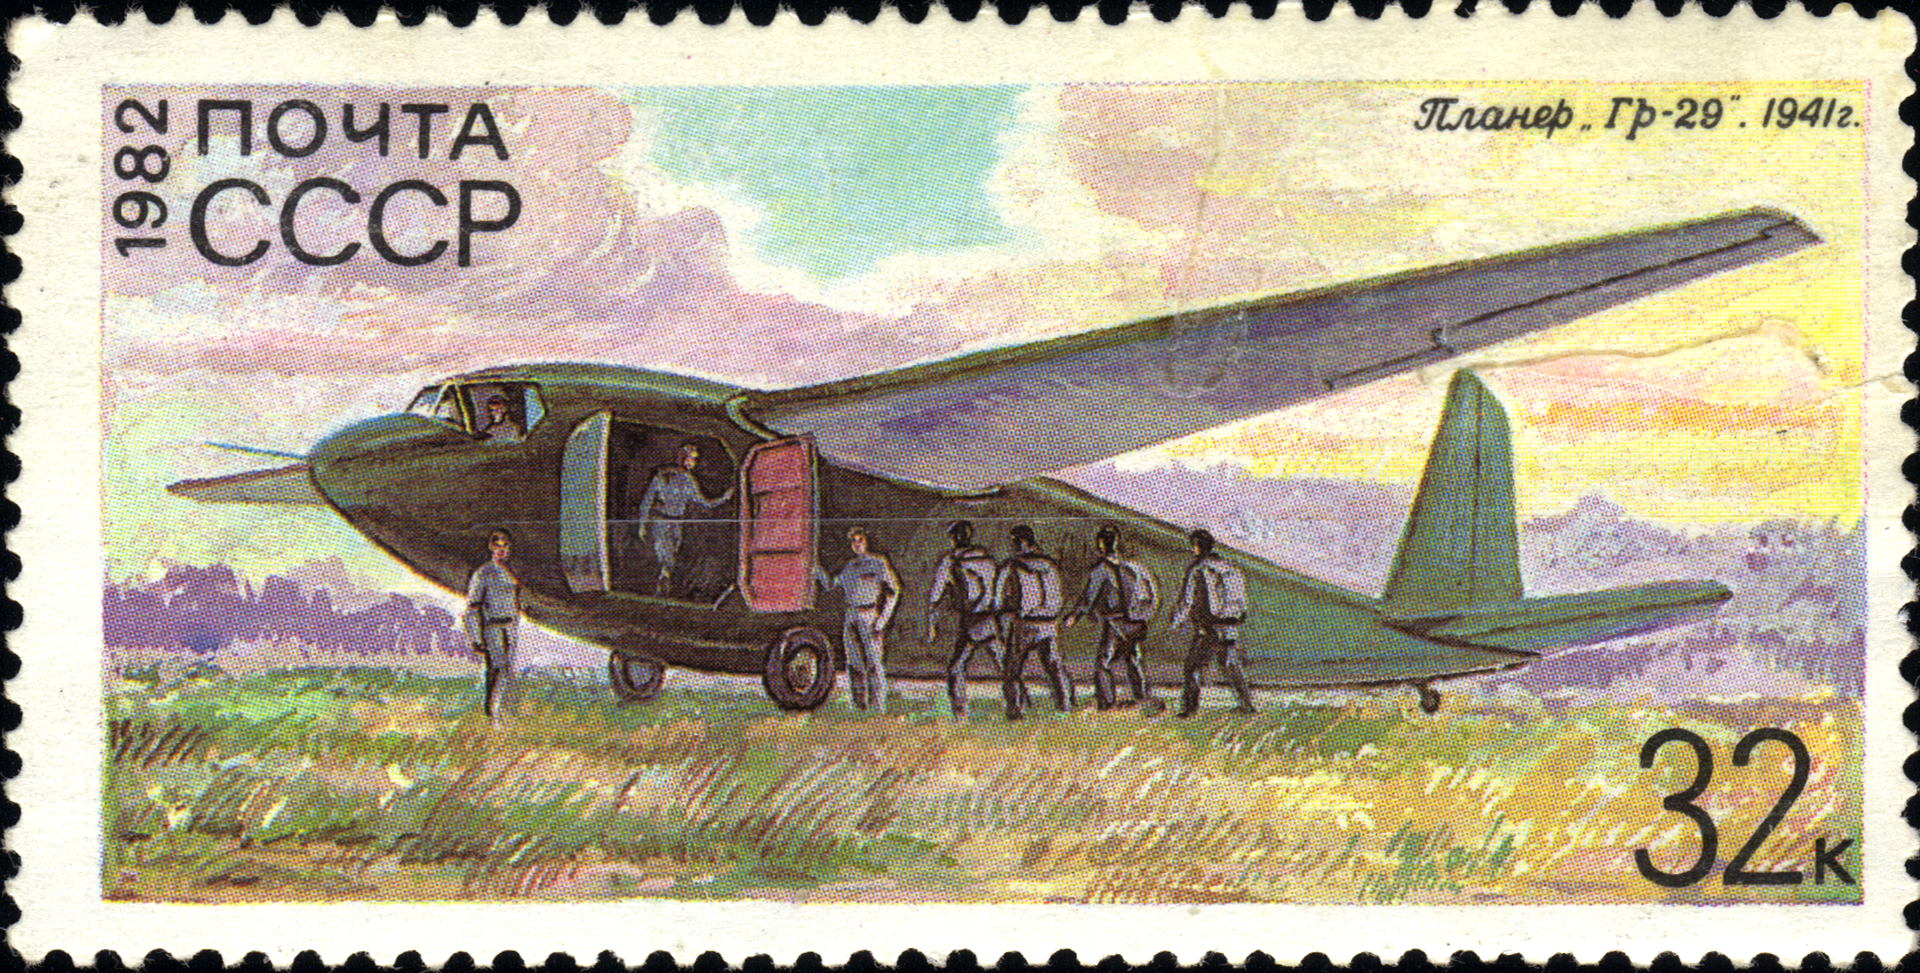 Једрилица Г-11 (Гр-29) на поштанској маркици
